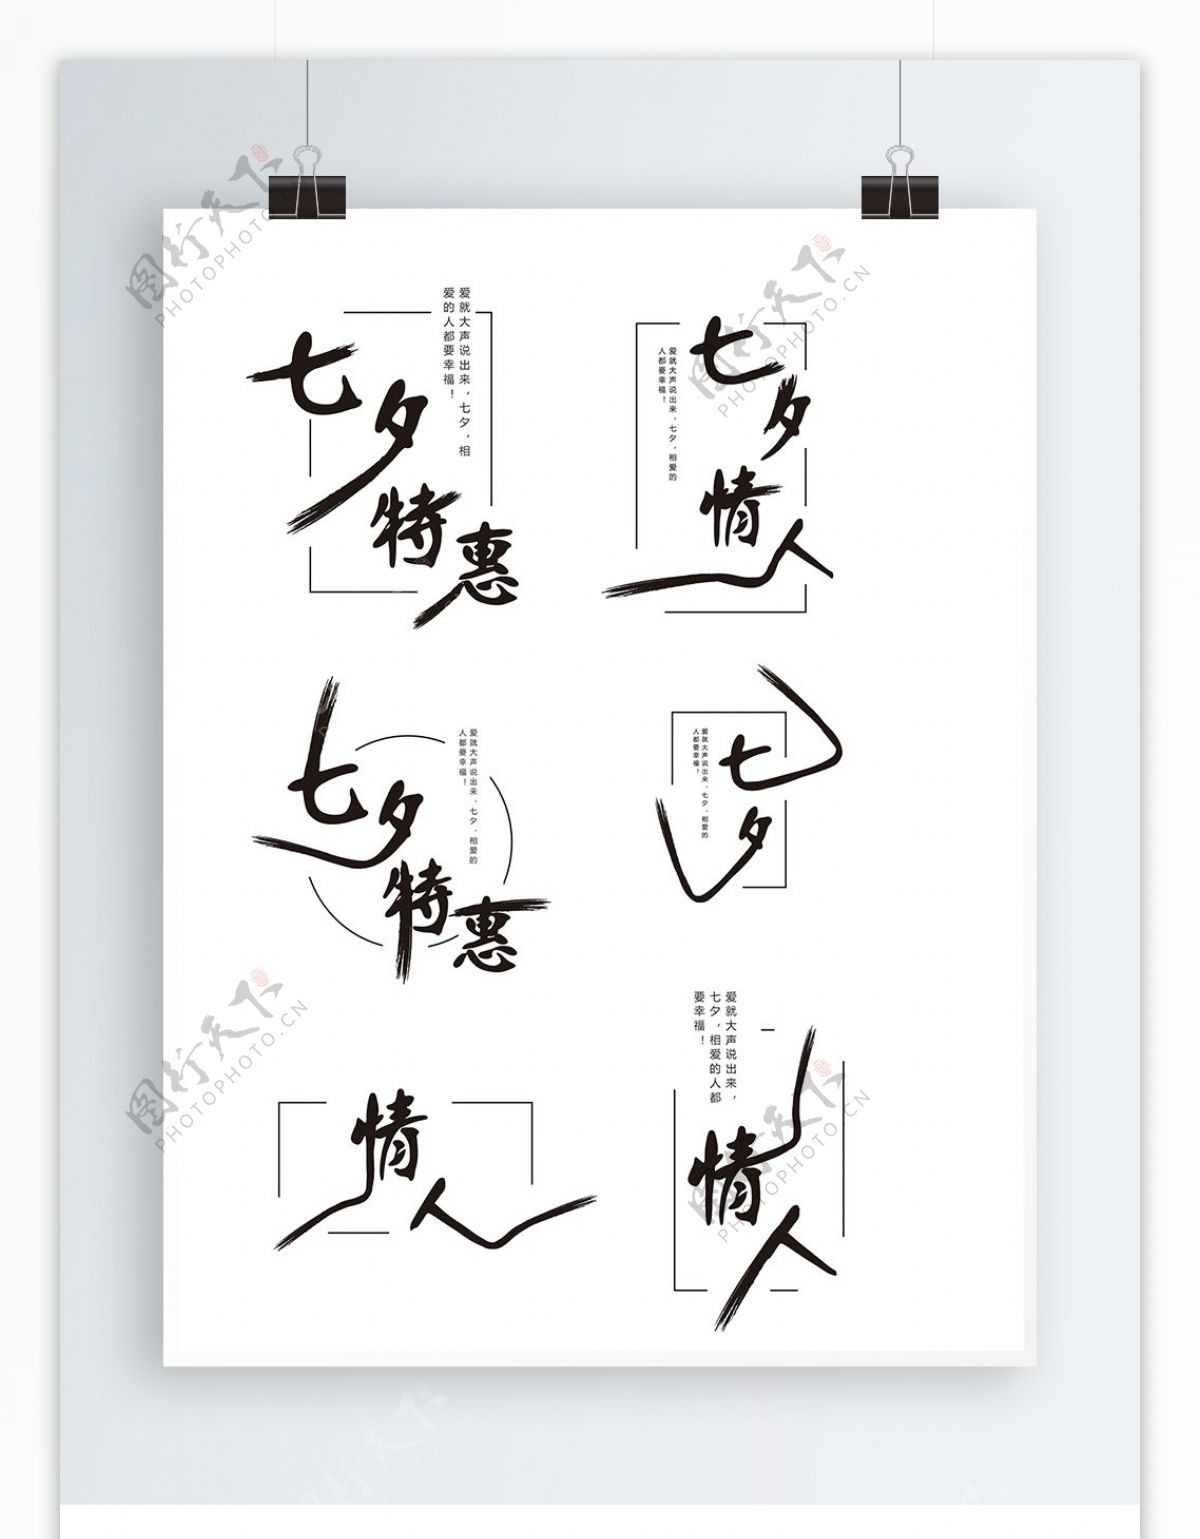 原创中国风七夕特惠艺术字体设计